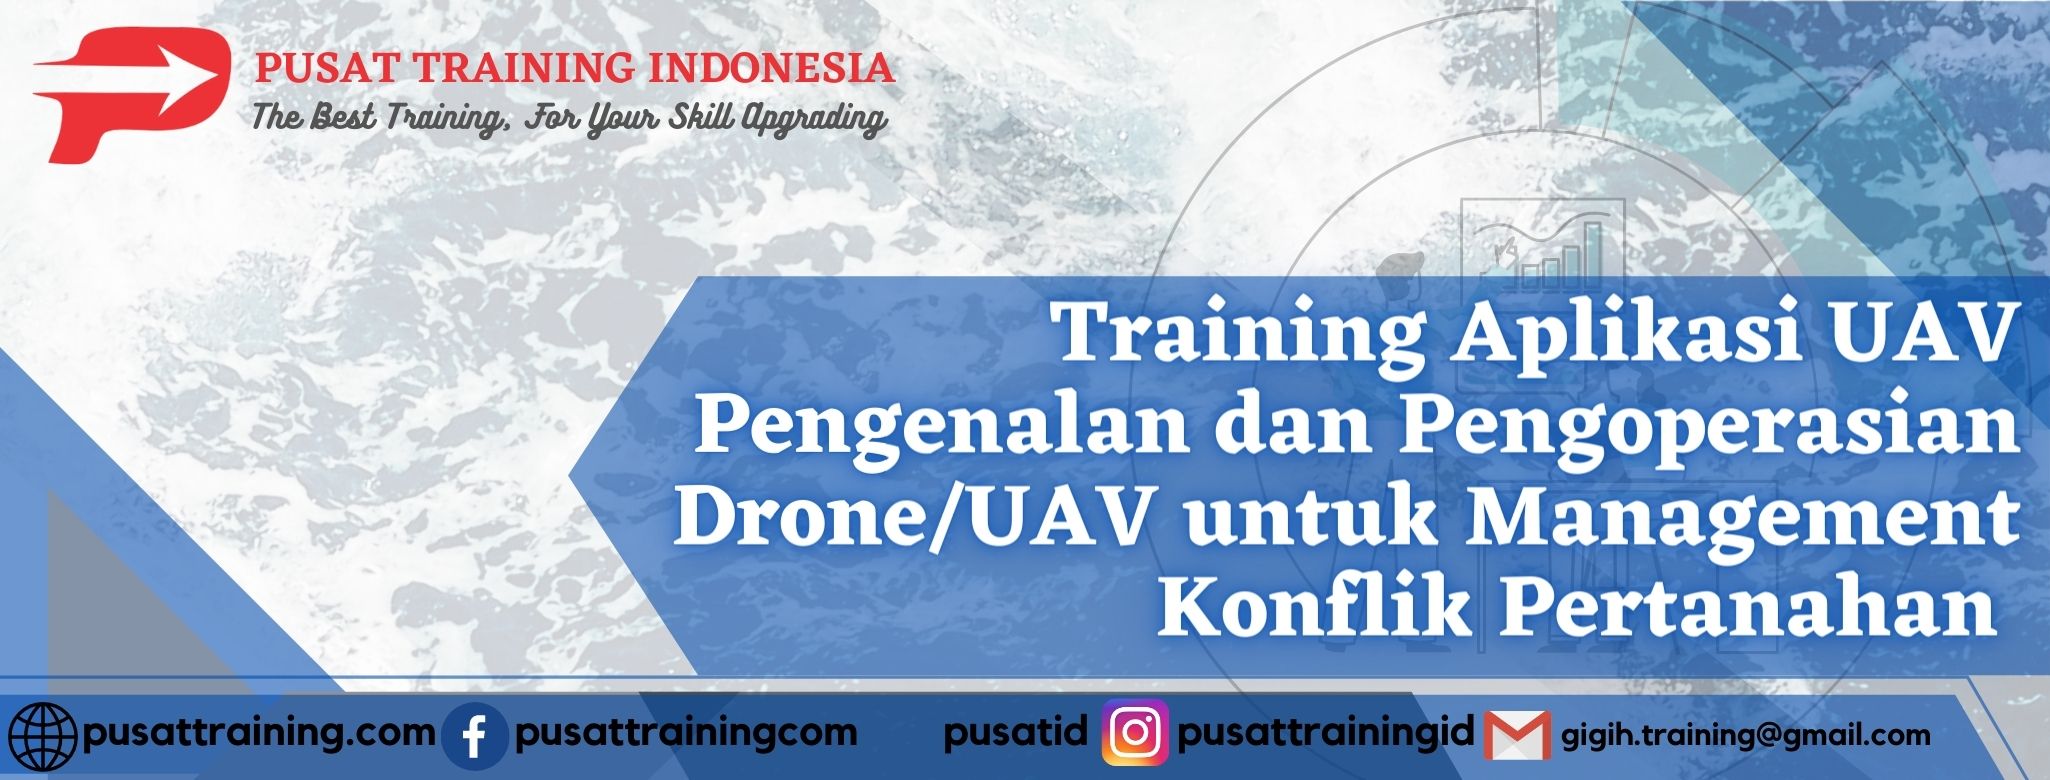 Training-Aplikasi-UAV-Pengenalan-dan-Pengoperasian-Drone_UAV-untuk-Management-Konflik-Pertanahan